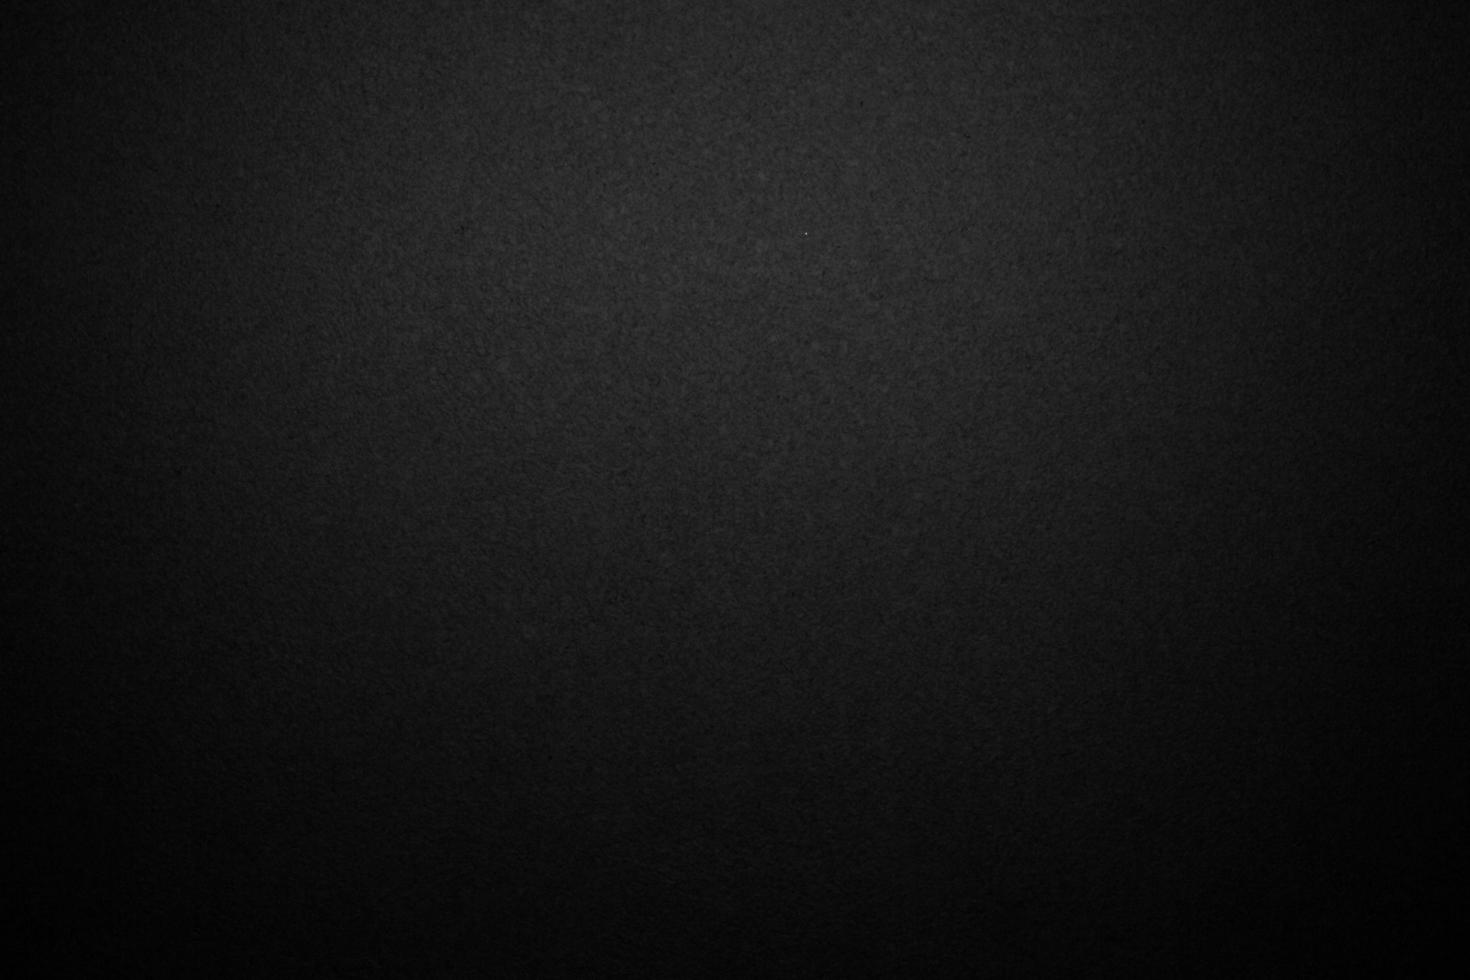 viejo fondo negro. textura grunge. fondo de pantalla oscuro pizarra, pizarra, pared de la habitación. foto